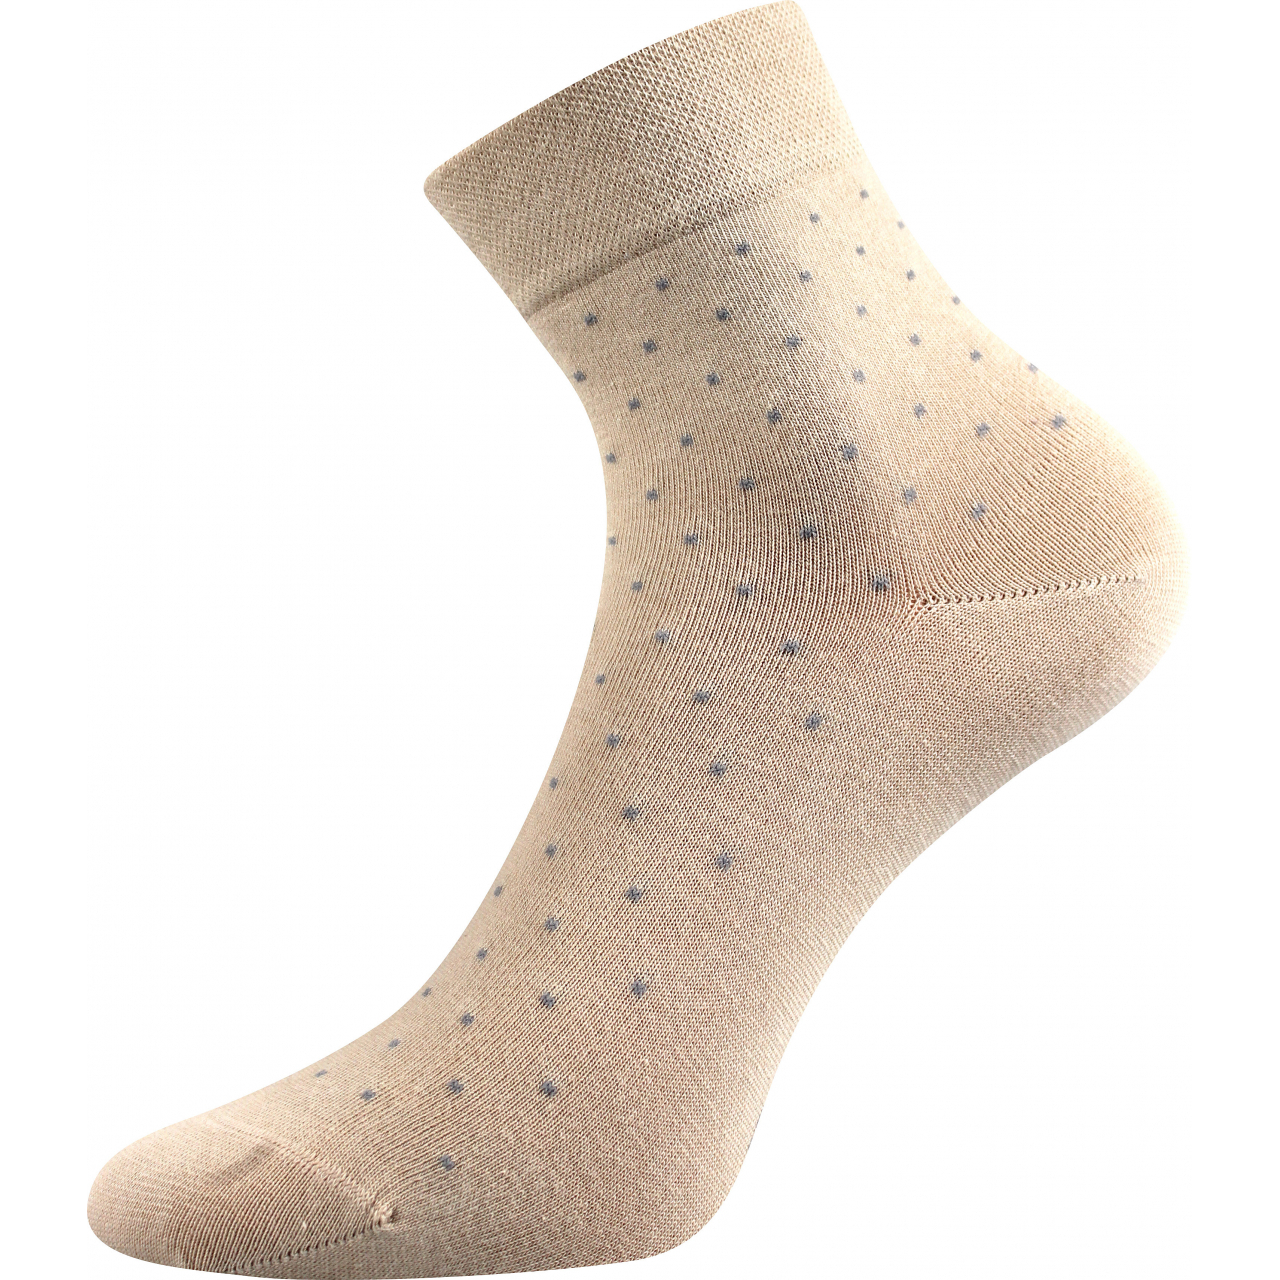 Ponožky dámské elegantní Lonka Fiona - béžové, 35-38